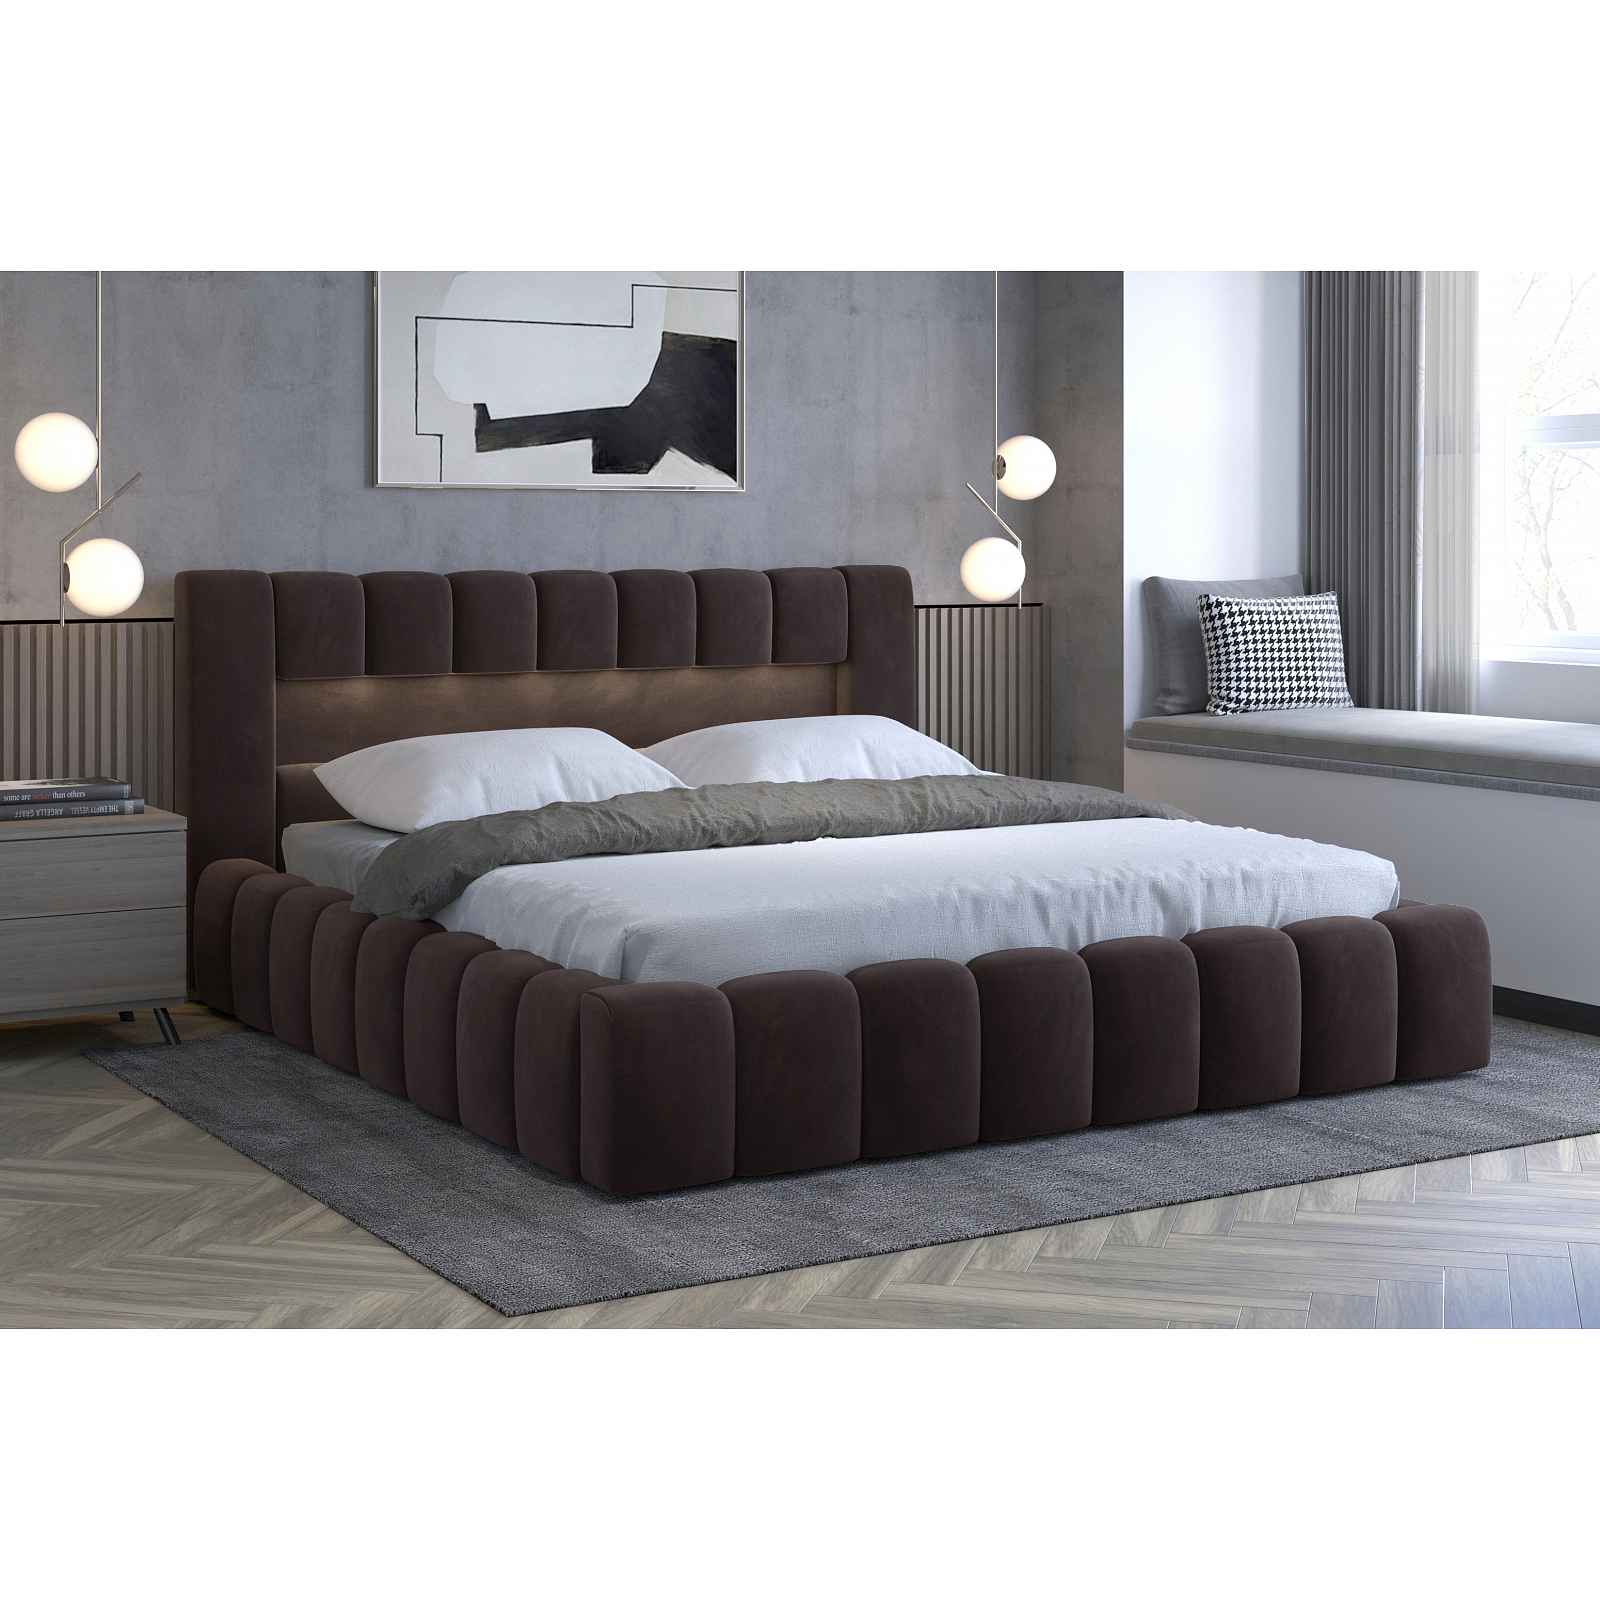 Moderní postel Lebrasco, 180x200cm, hnědá + LED